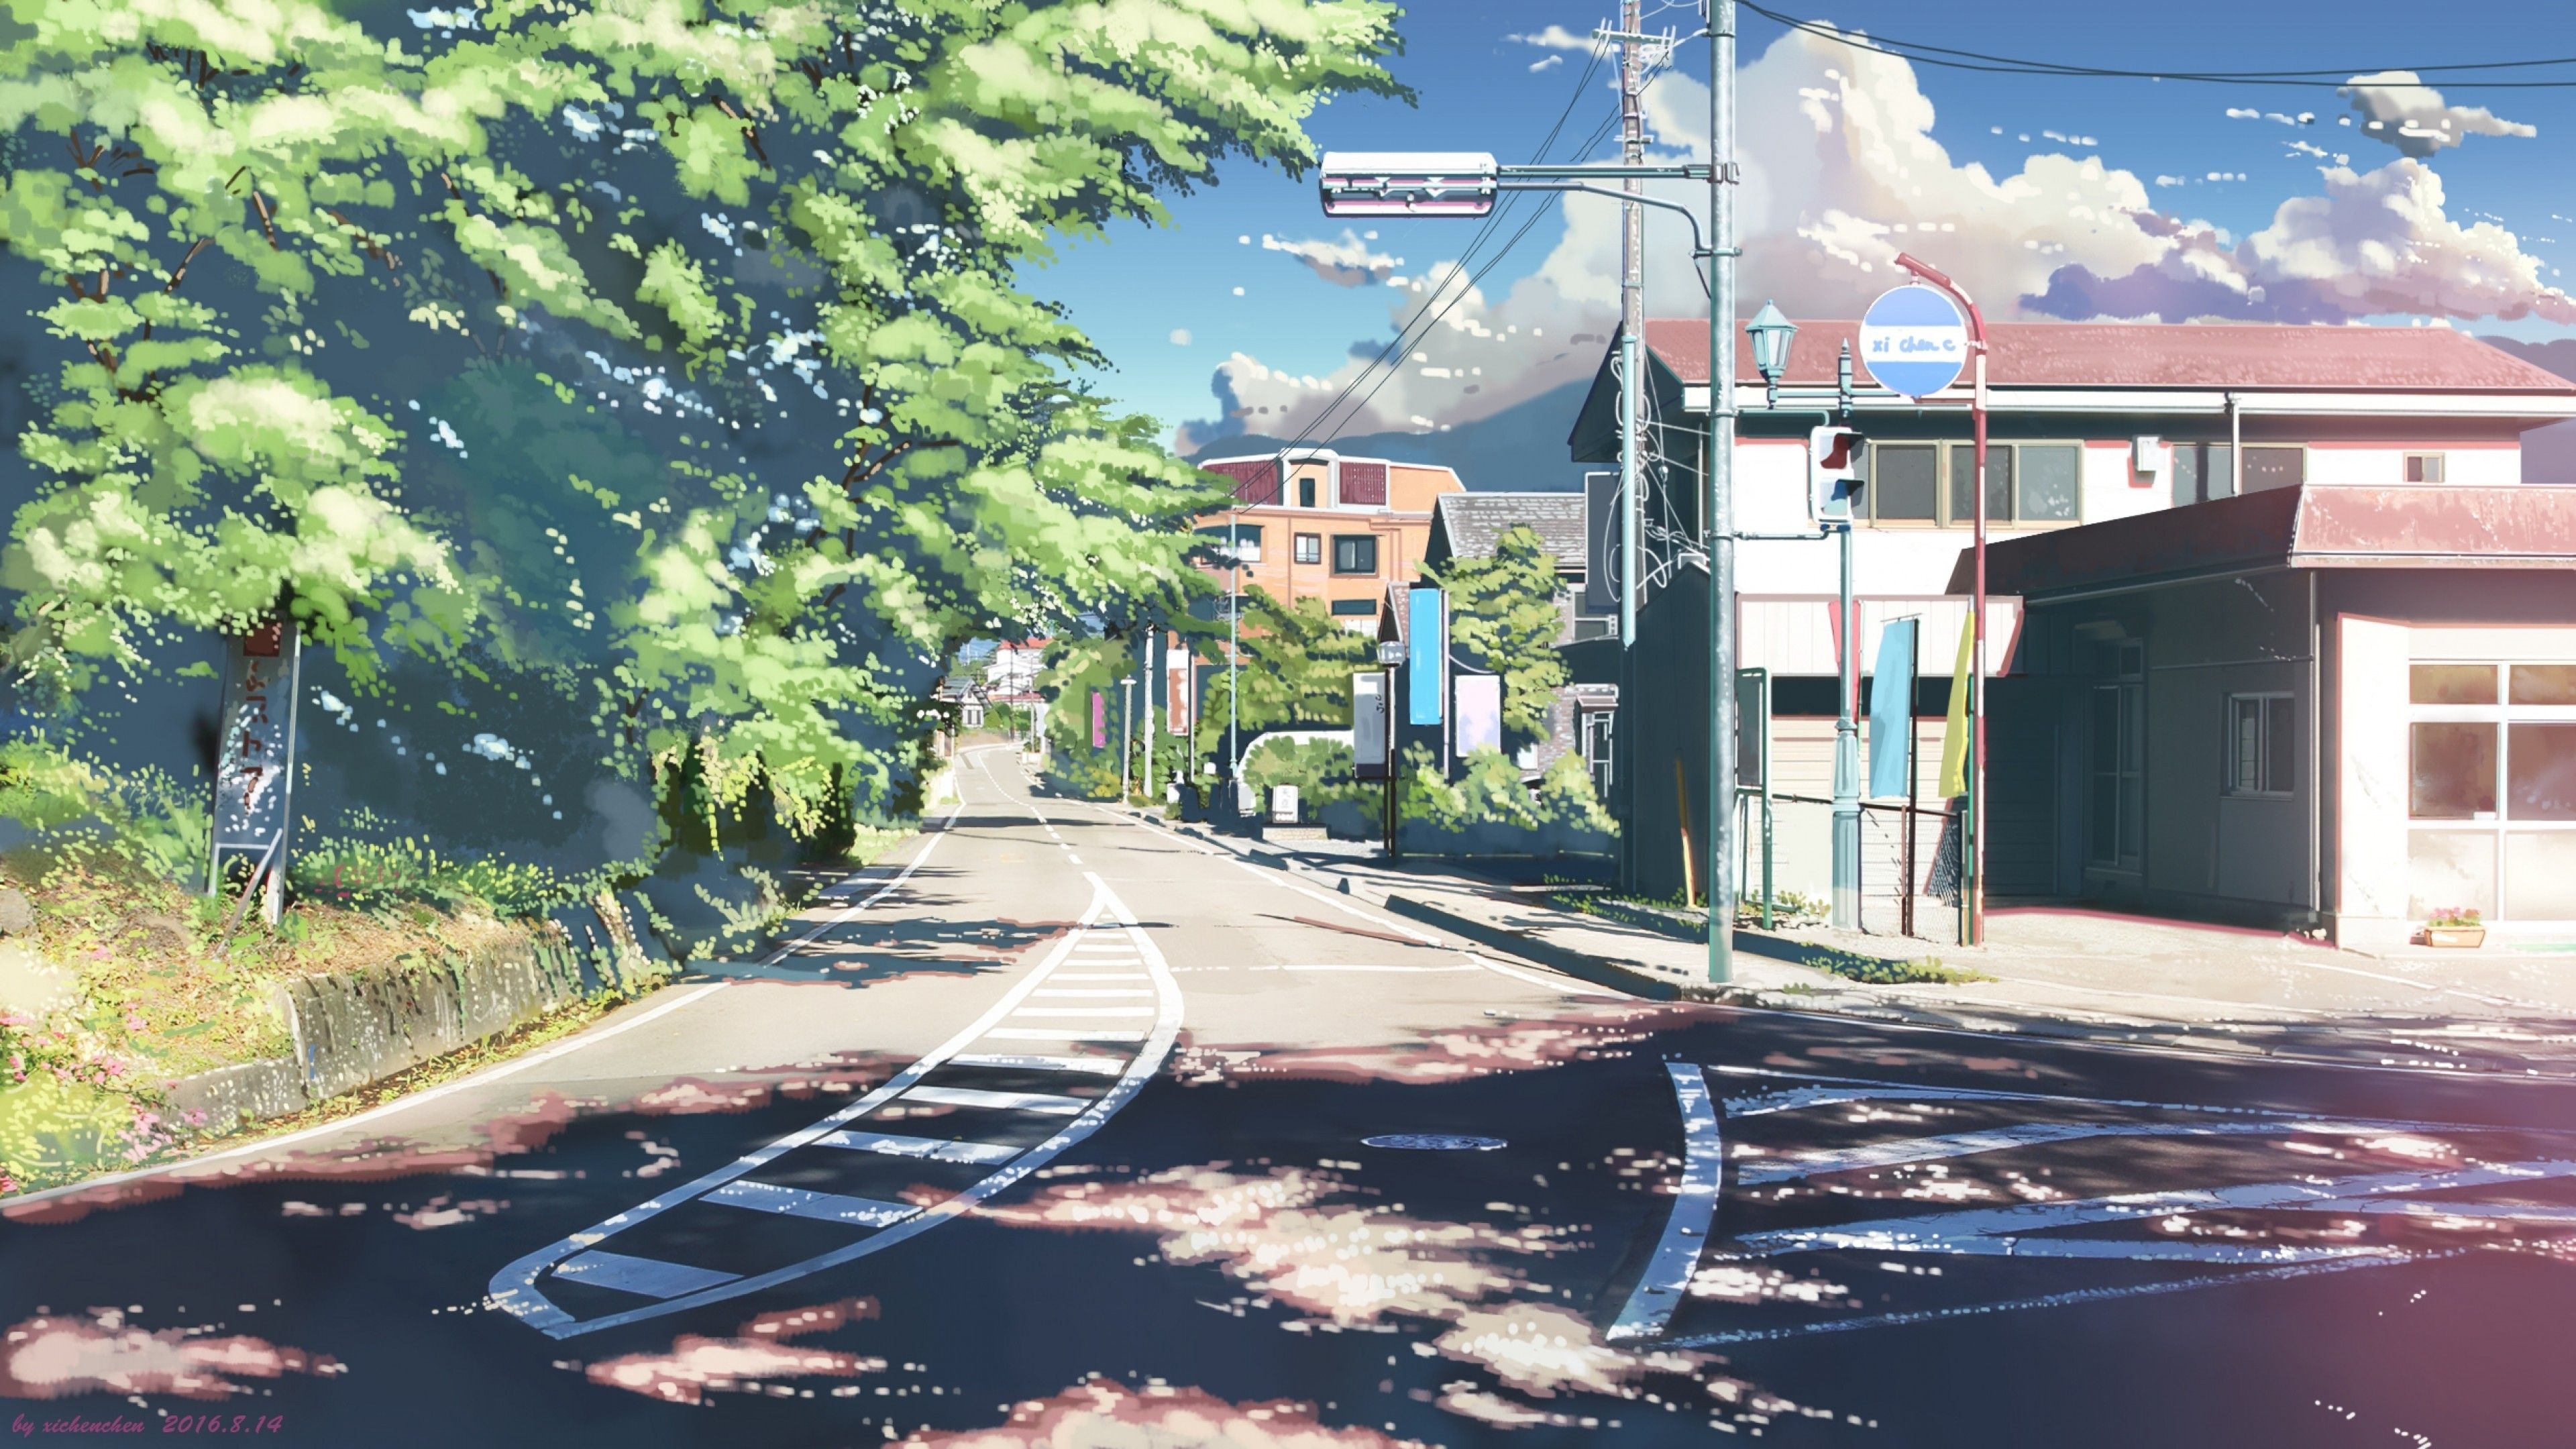 Hình nền Anime với các đường phố đẹp như tranh vẽ sẽ khiến bạn cảm thấy như đang sống trong một thế giới khác. Với các hình ảnh đầy sắc màu và sự sống động, đây là một bức tranh tuyệt vời để trang trí màn hình của bạn.